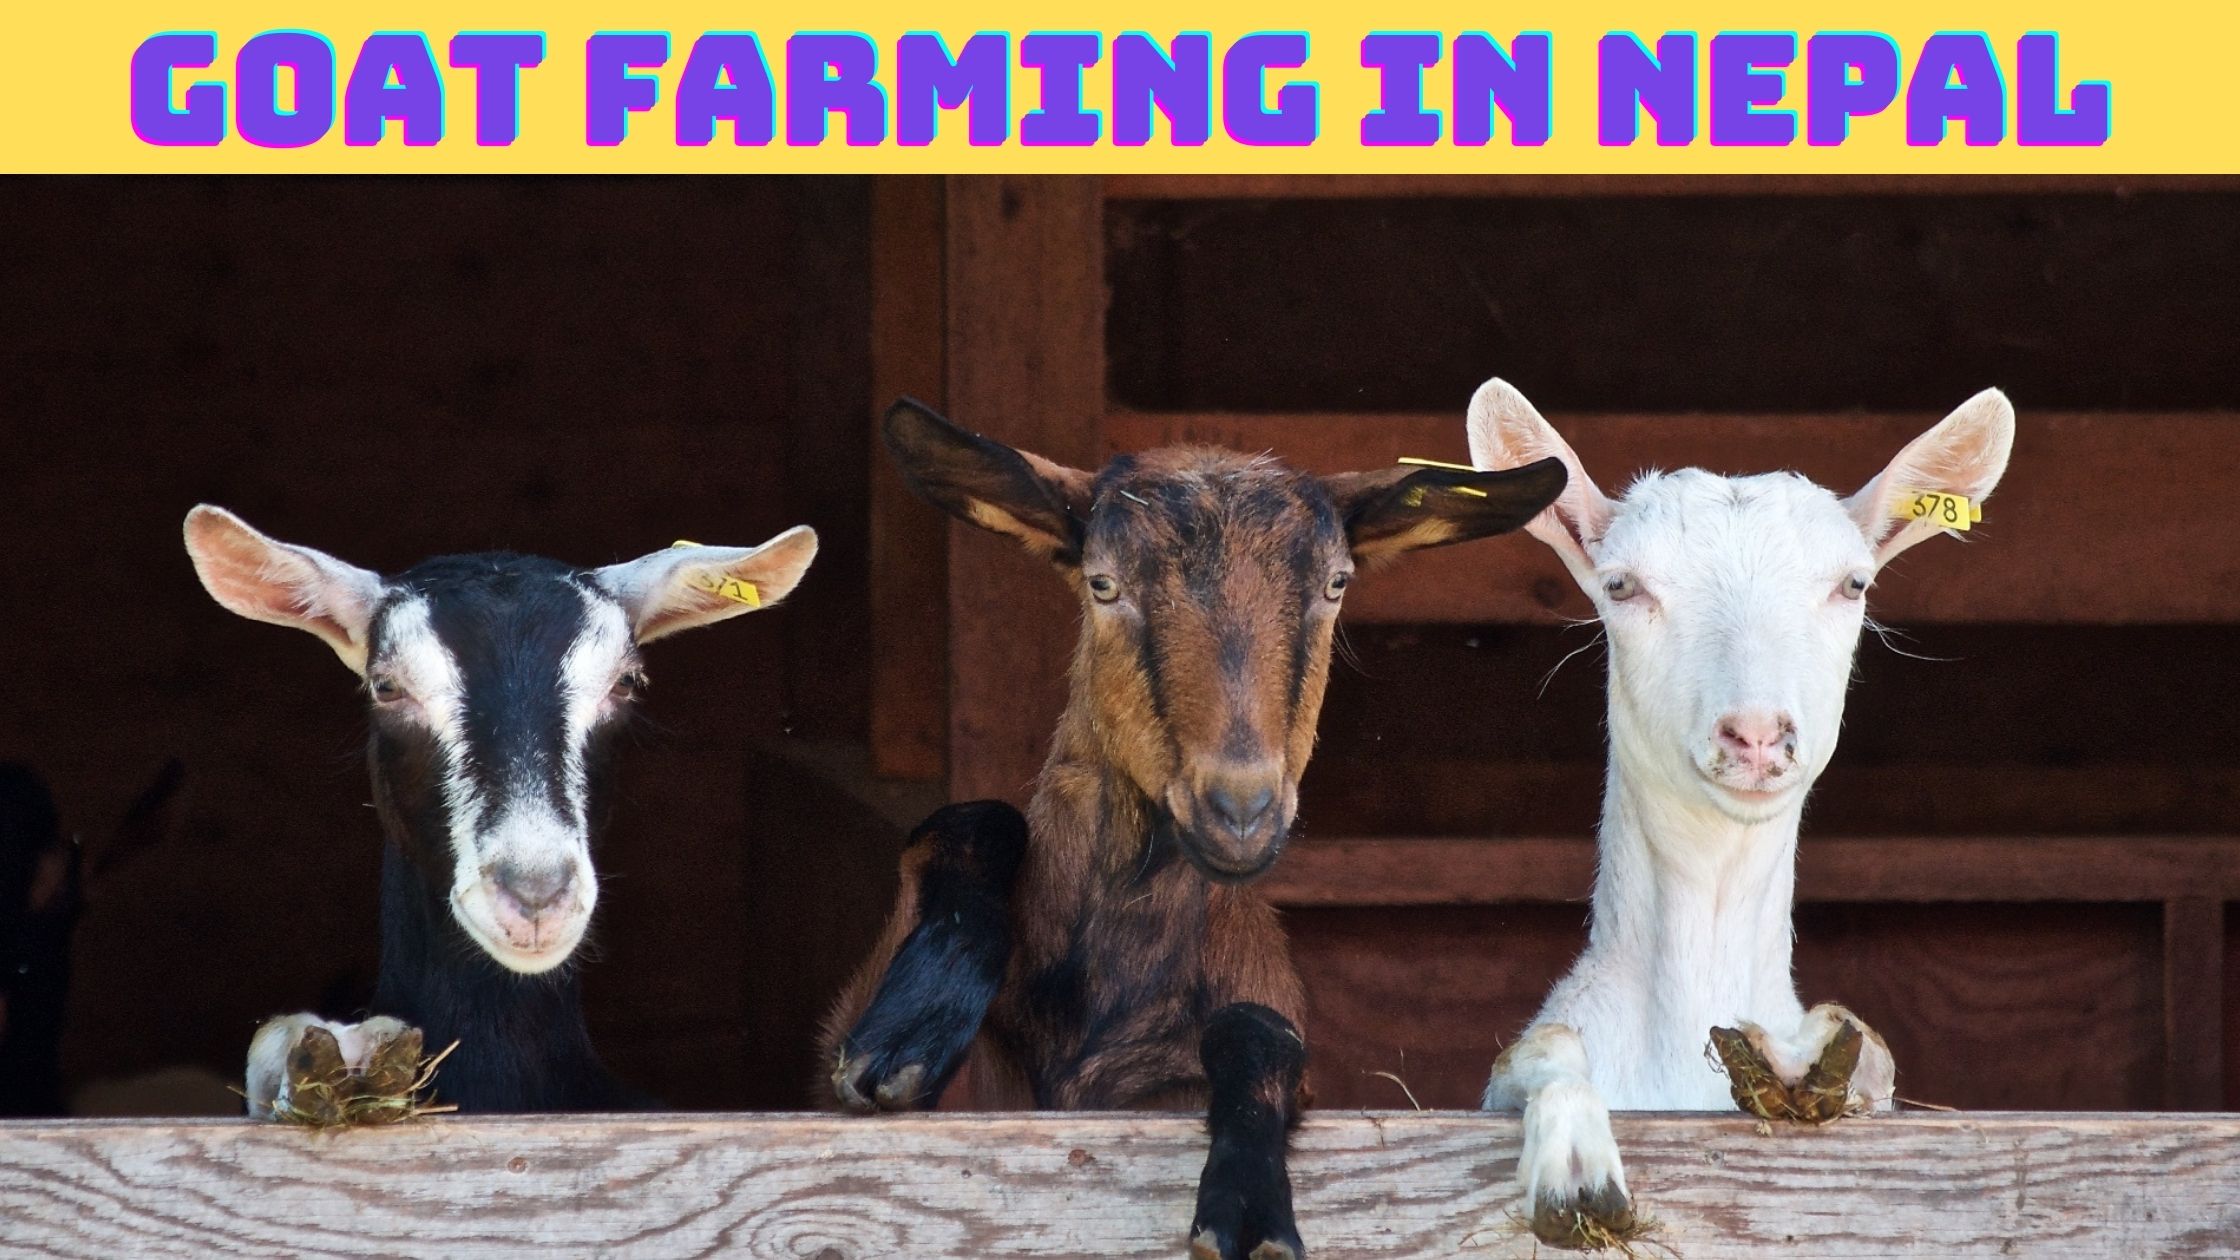 Goat farming in Nepal